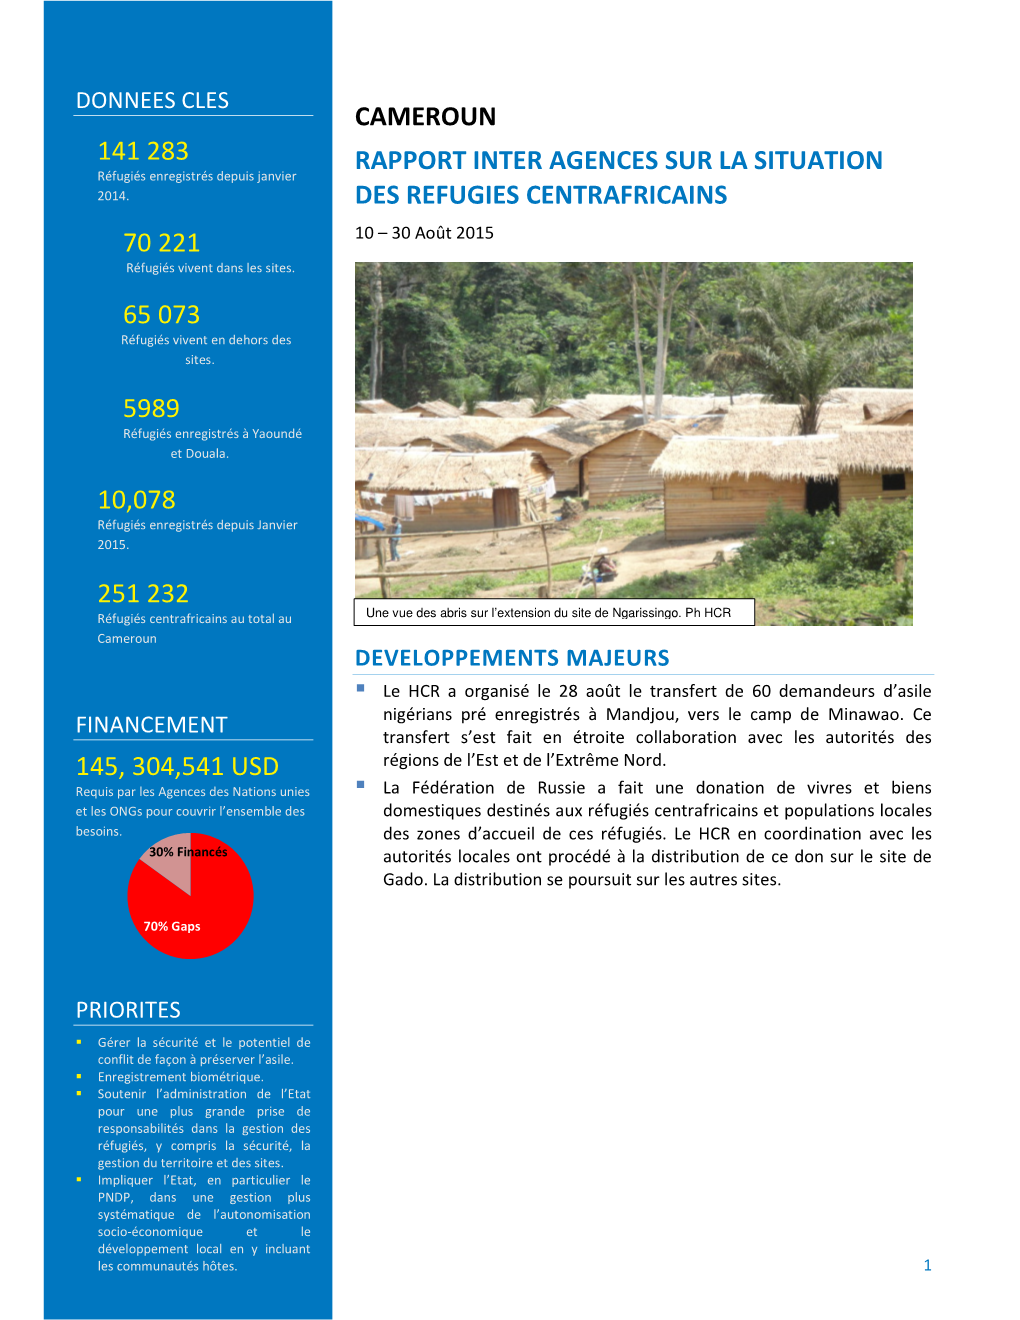 Cameroun Rapport Inter Agences Sur La